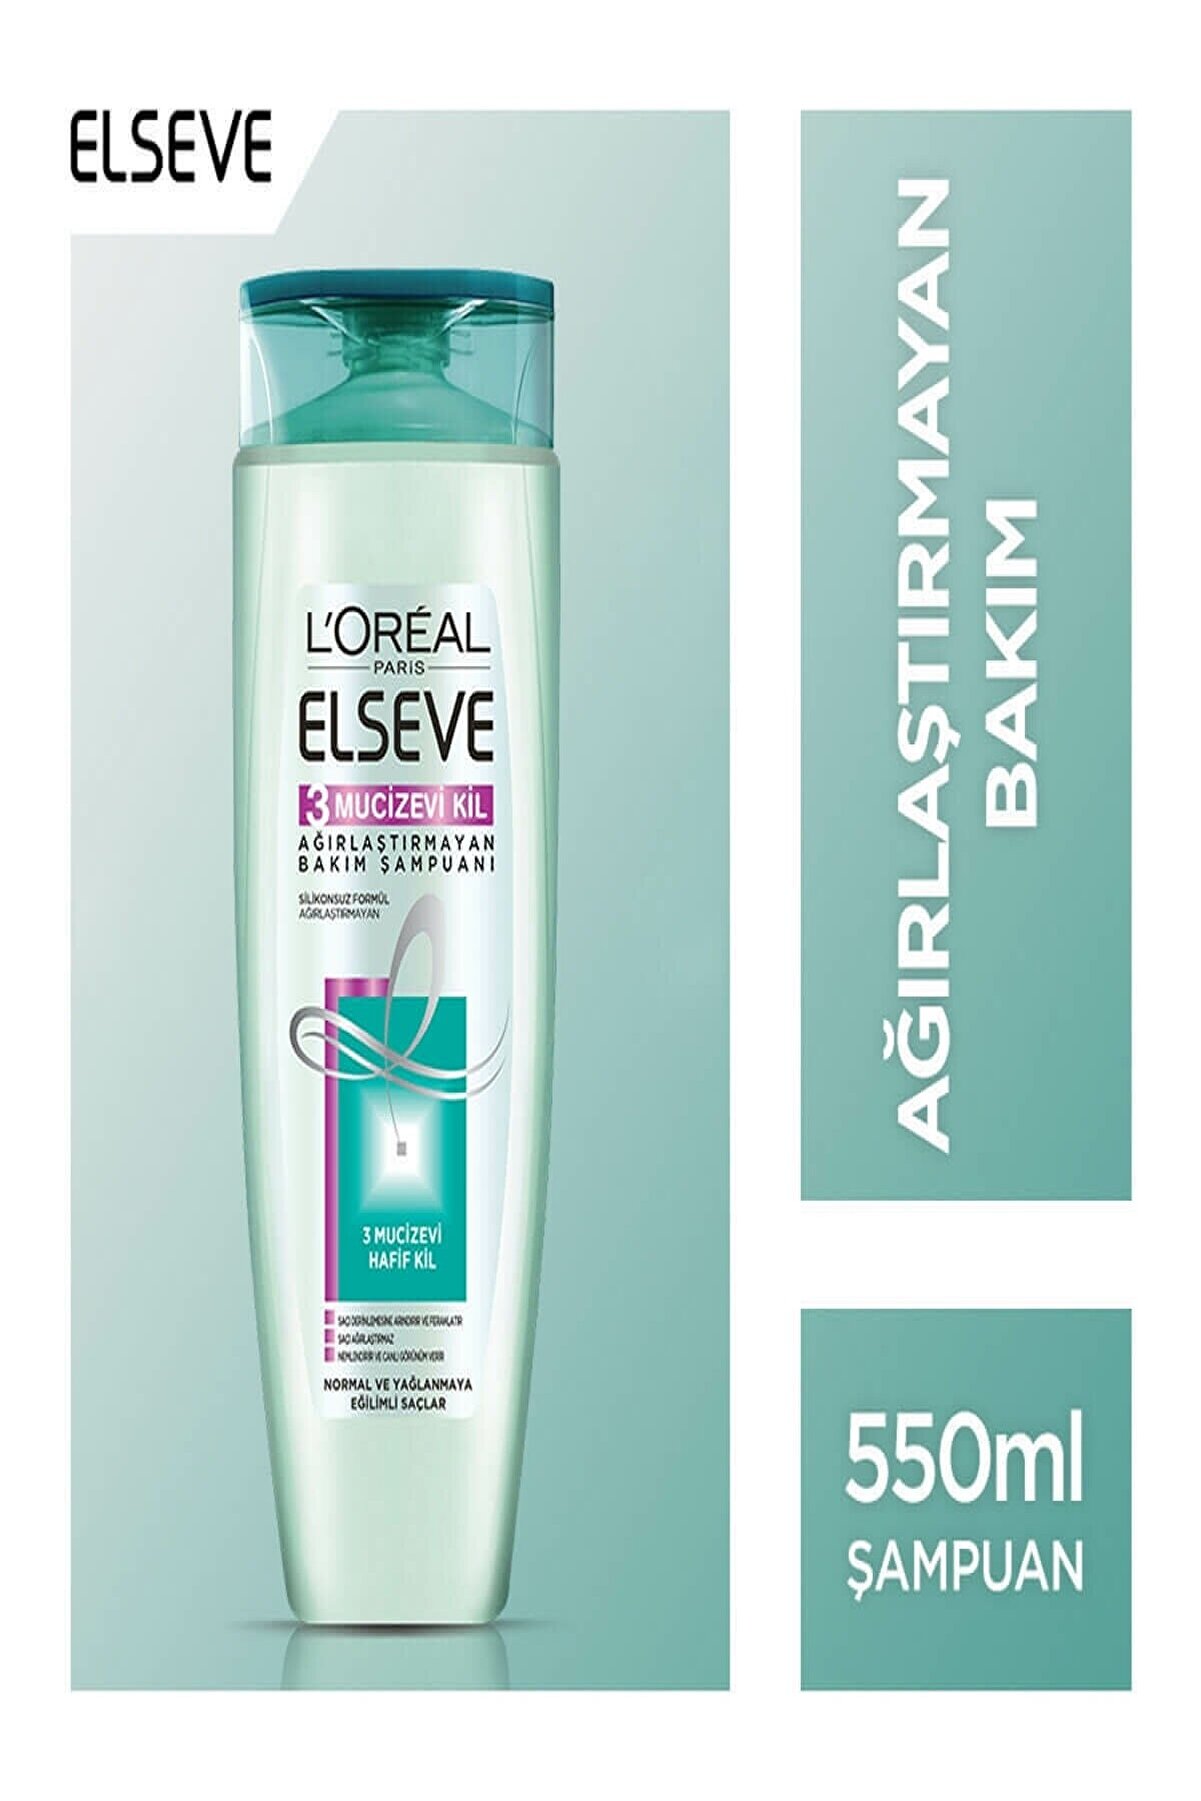 Elseve 3 Mucizevi Kil Ağırlaştırmayan Bakım Şampuanı 550 ml